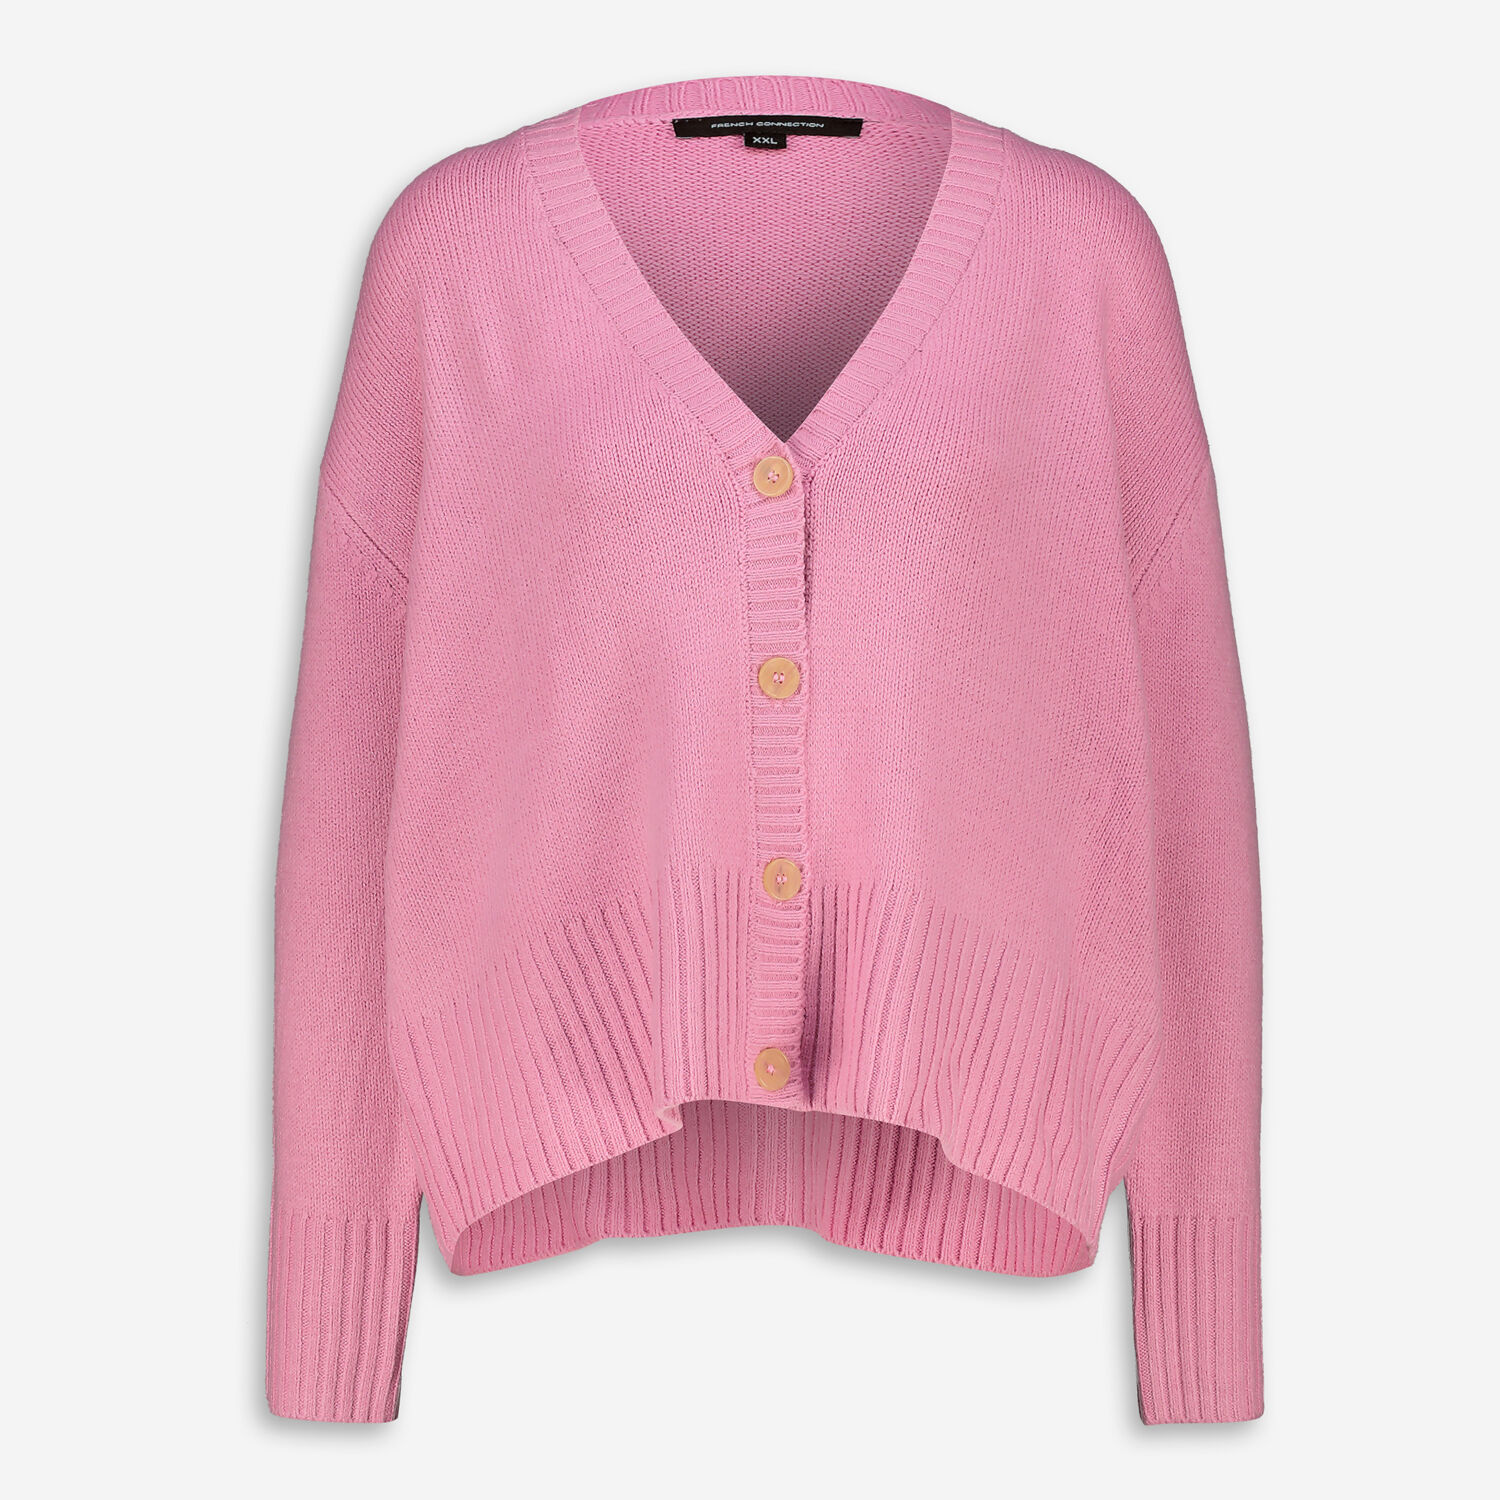 Pink Knit Cardigan - TK Maxx UK